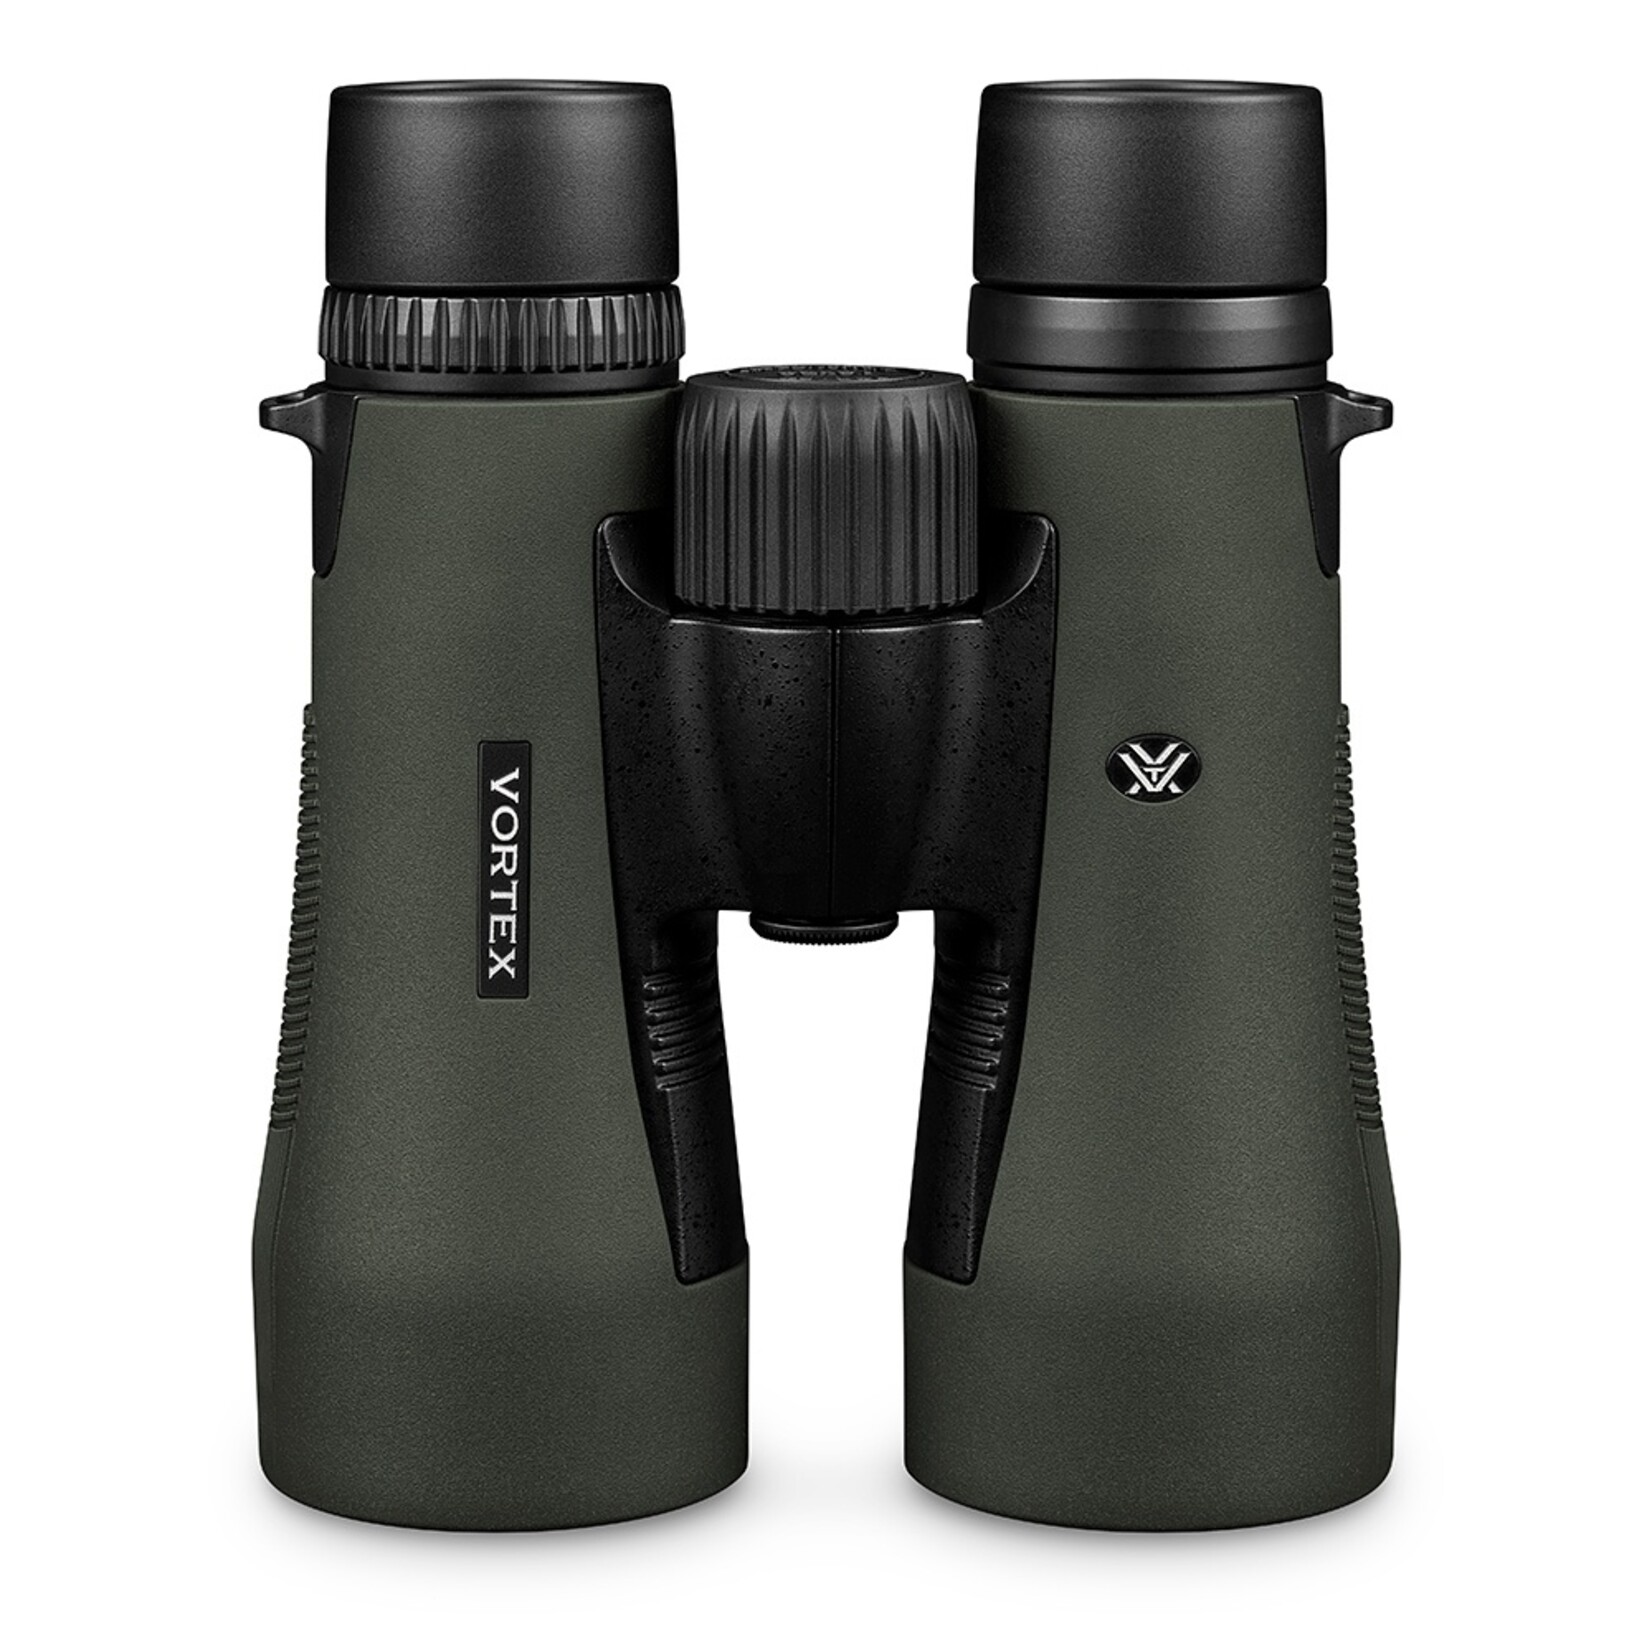 Vortex Vortex Diamondback HD 10x50 Binoculars with Glasspak